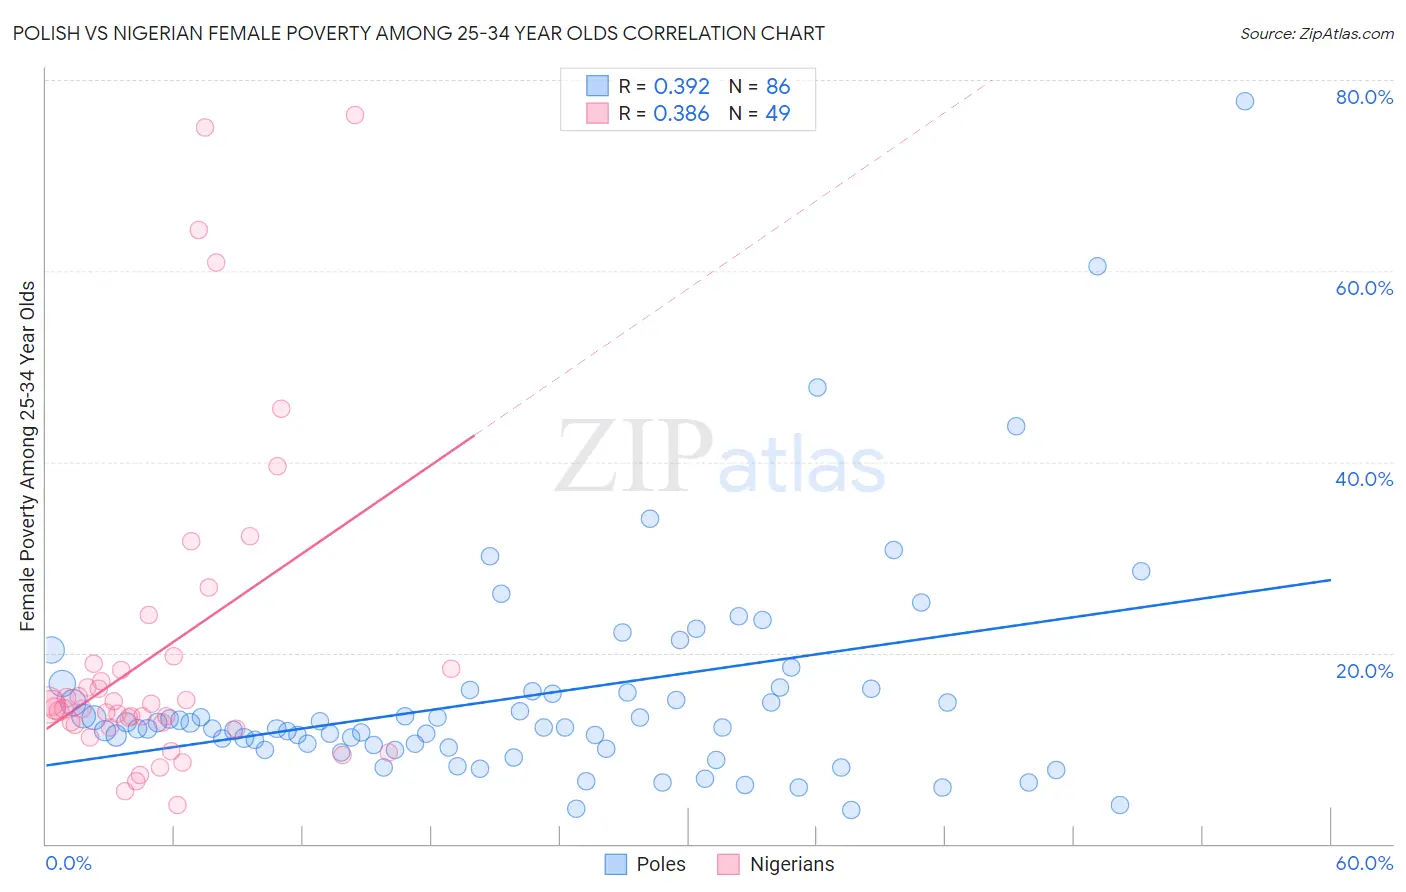 Polish vs Nigerian Female Poverty Among 25-34 Year Olds